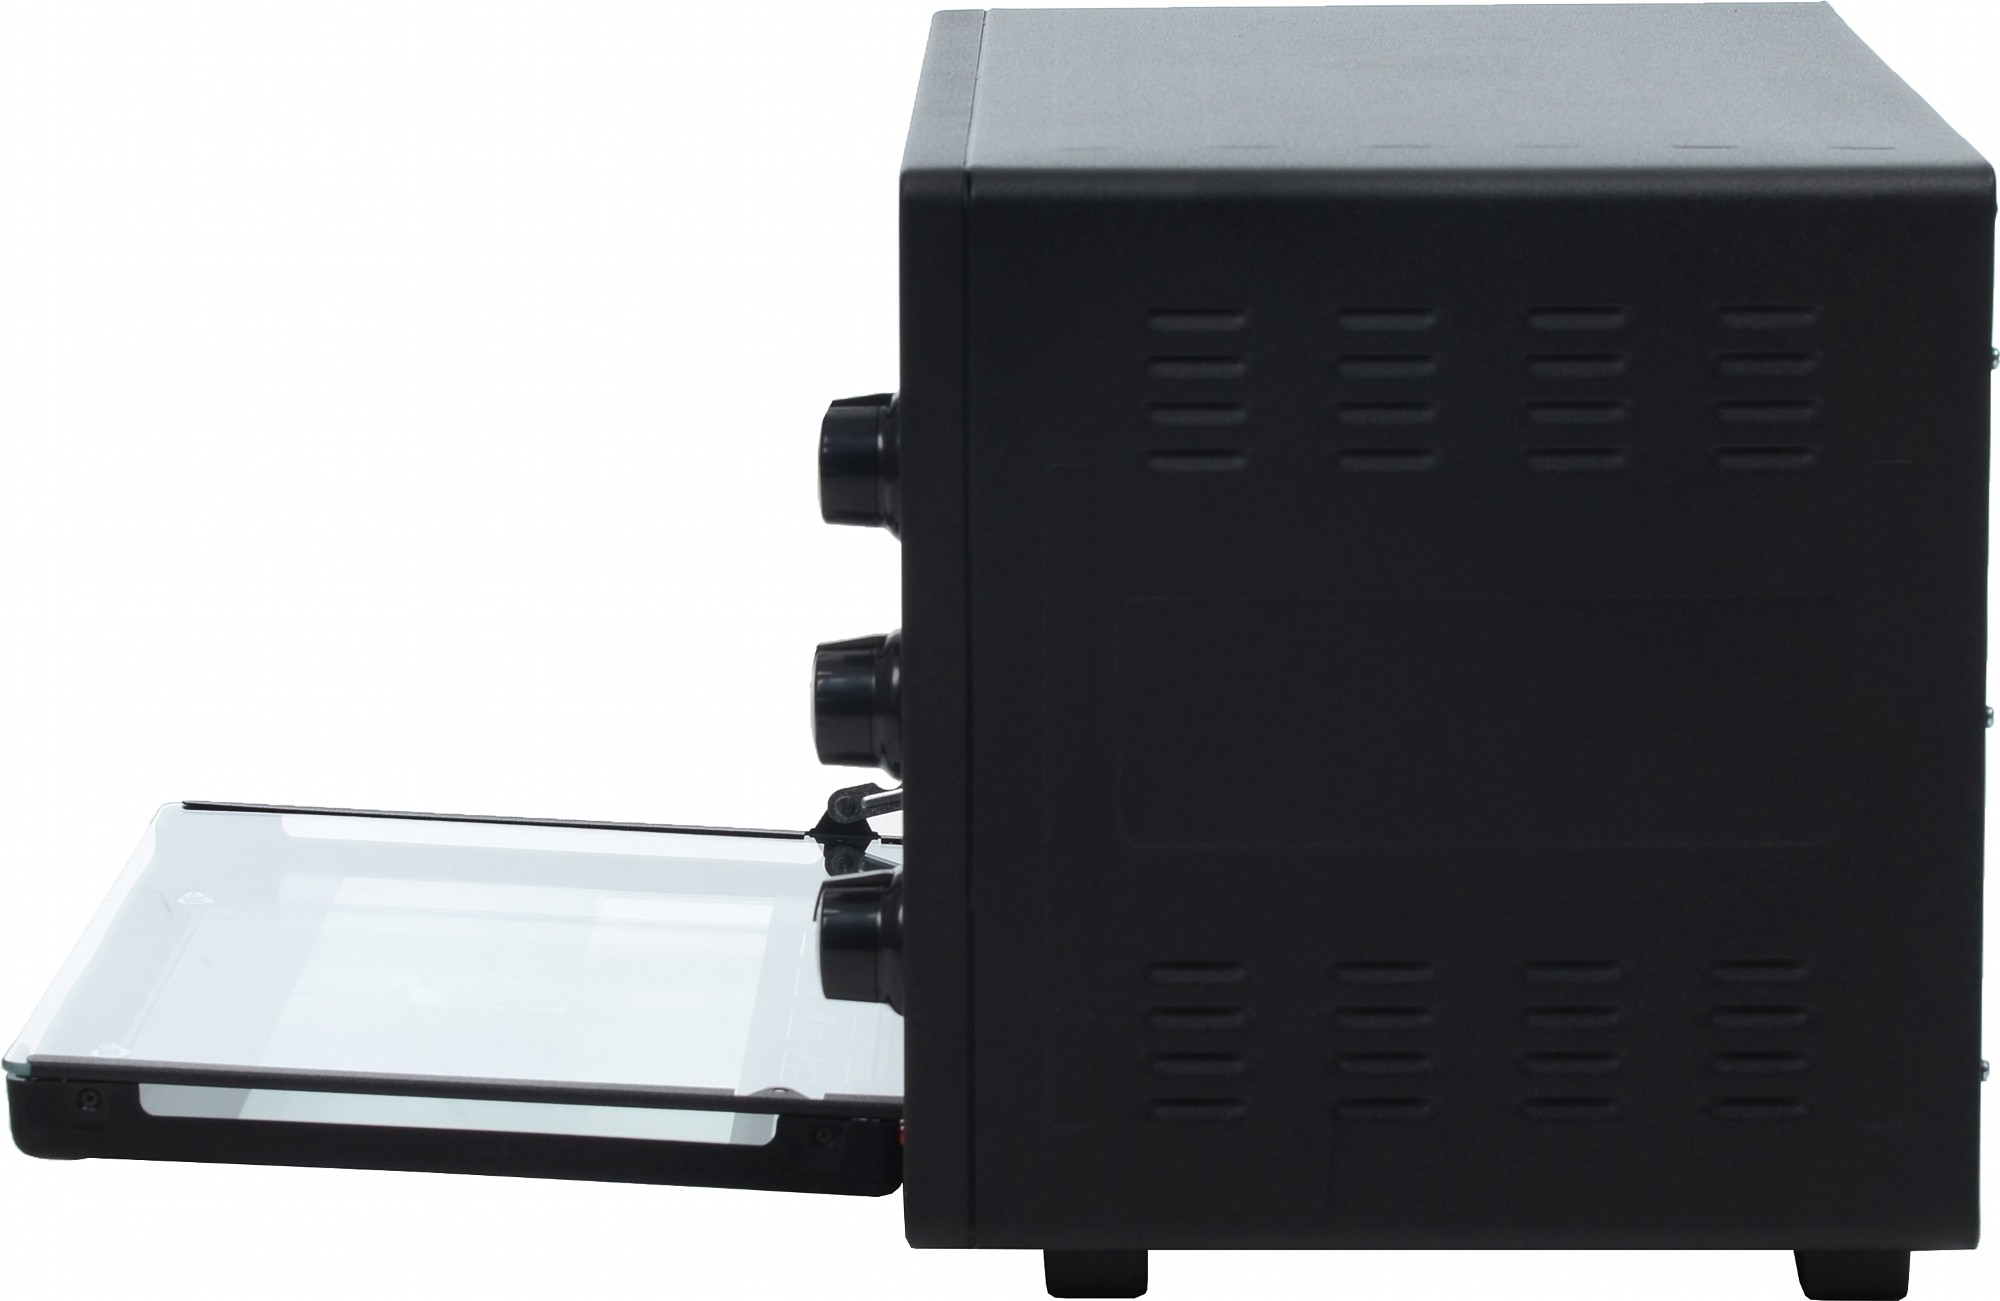 Электрическая печь Laretti LR-EC3403 Black отзывы - изображения 5